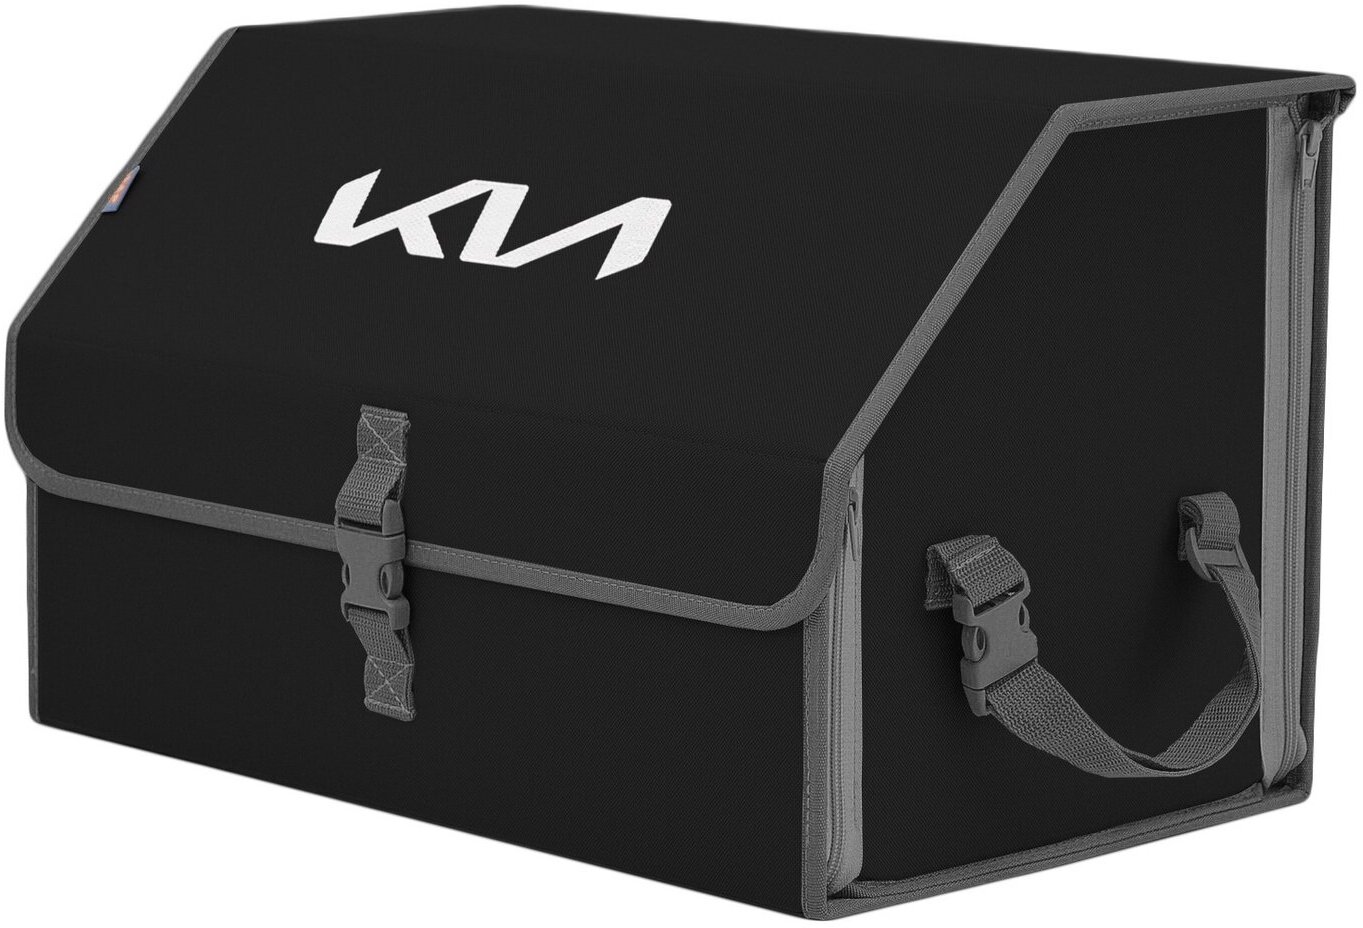 Органайзер-саквояж в багажник "Союз" (размер L). Цвет: черный с серой окантовкой и вышивкой KIA (КИА).